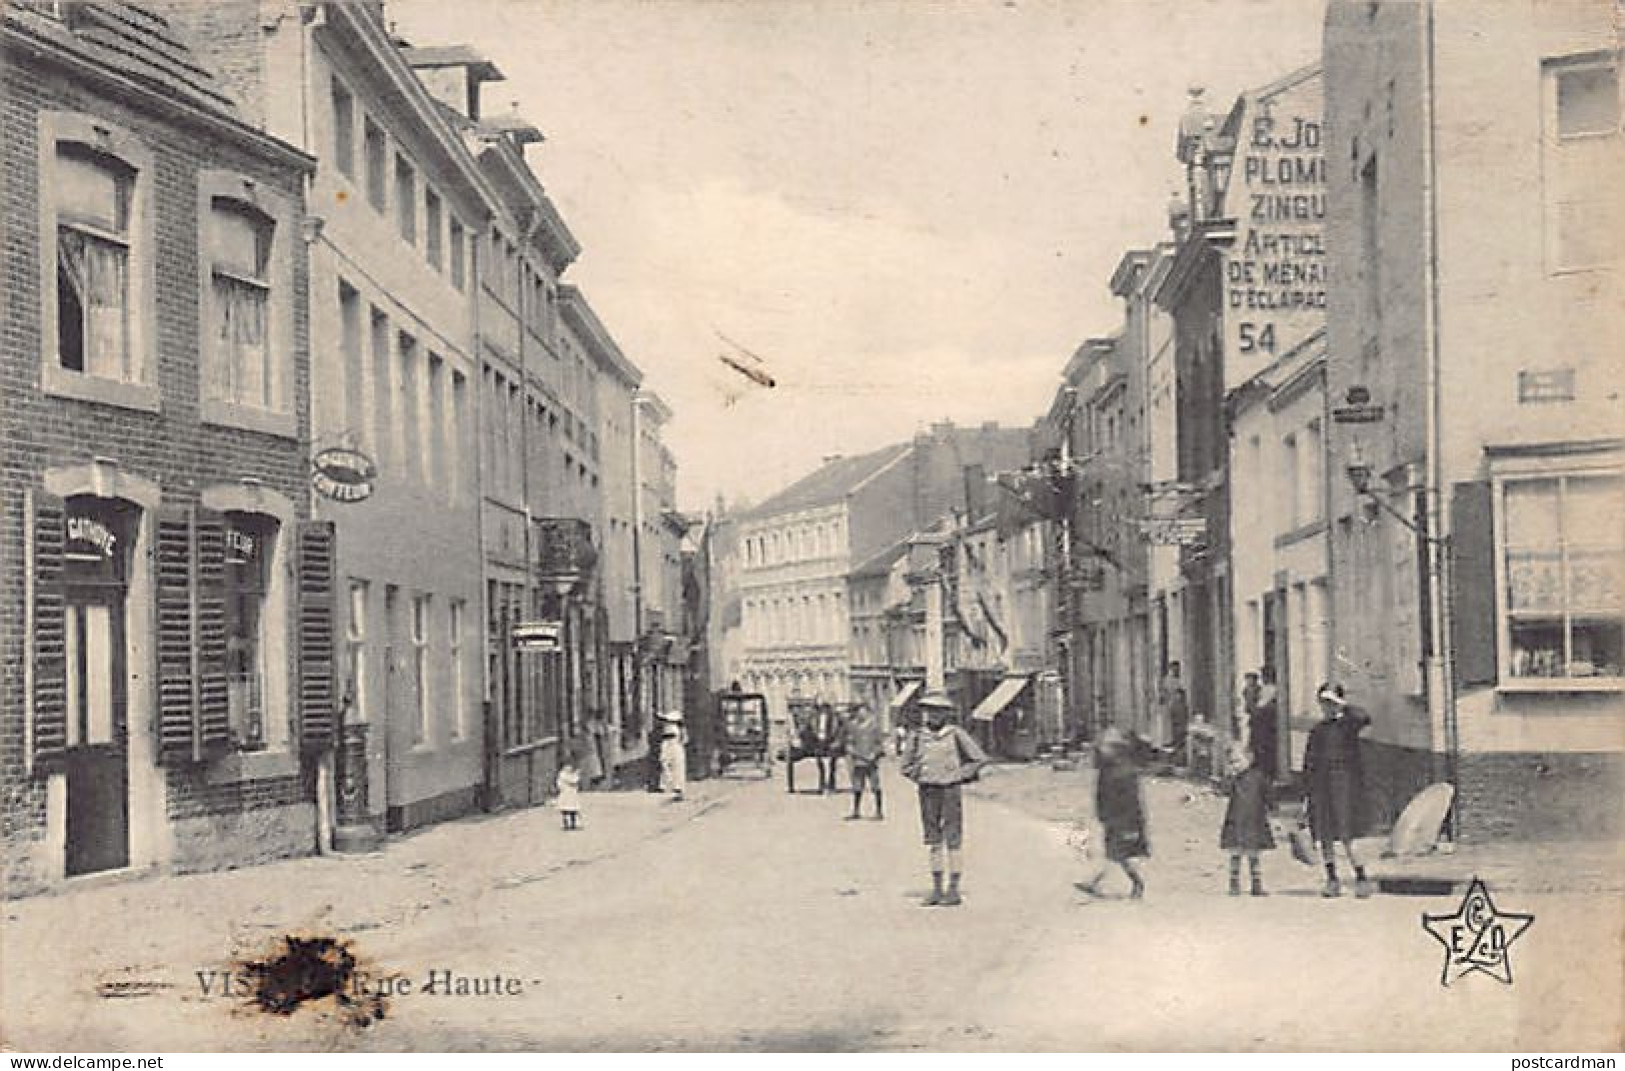 VISÉ (Liège) Rue Haute - Wezet